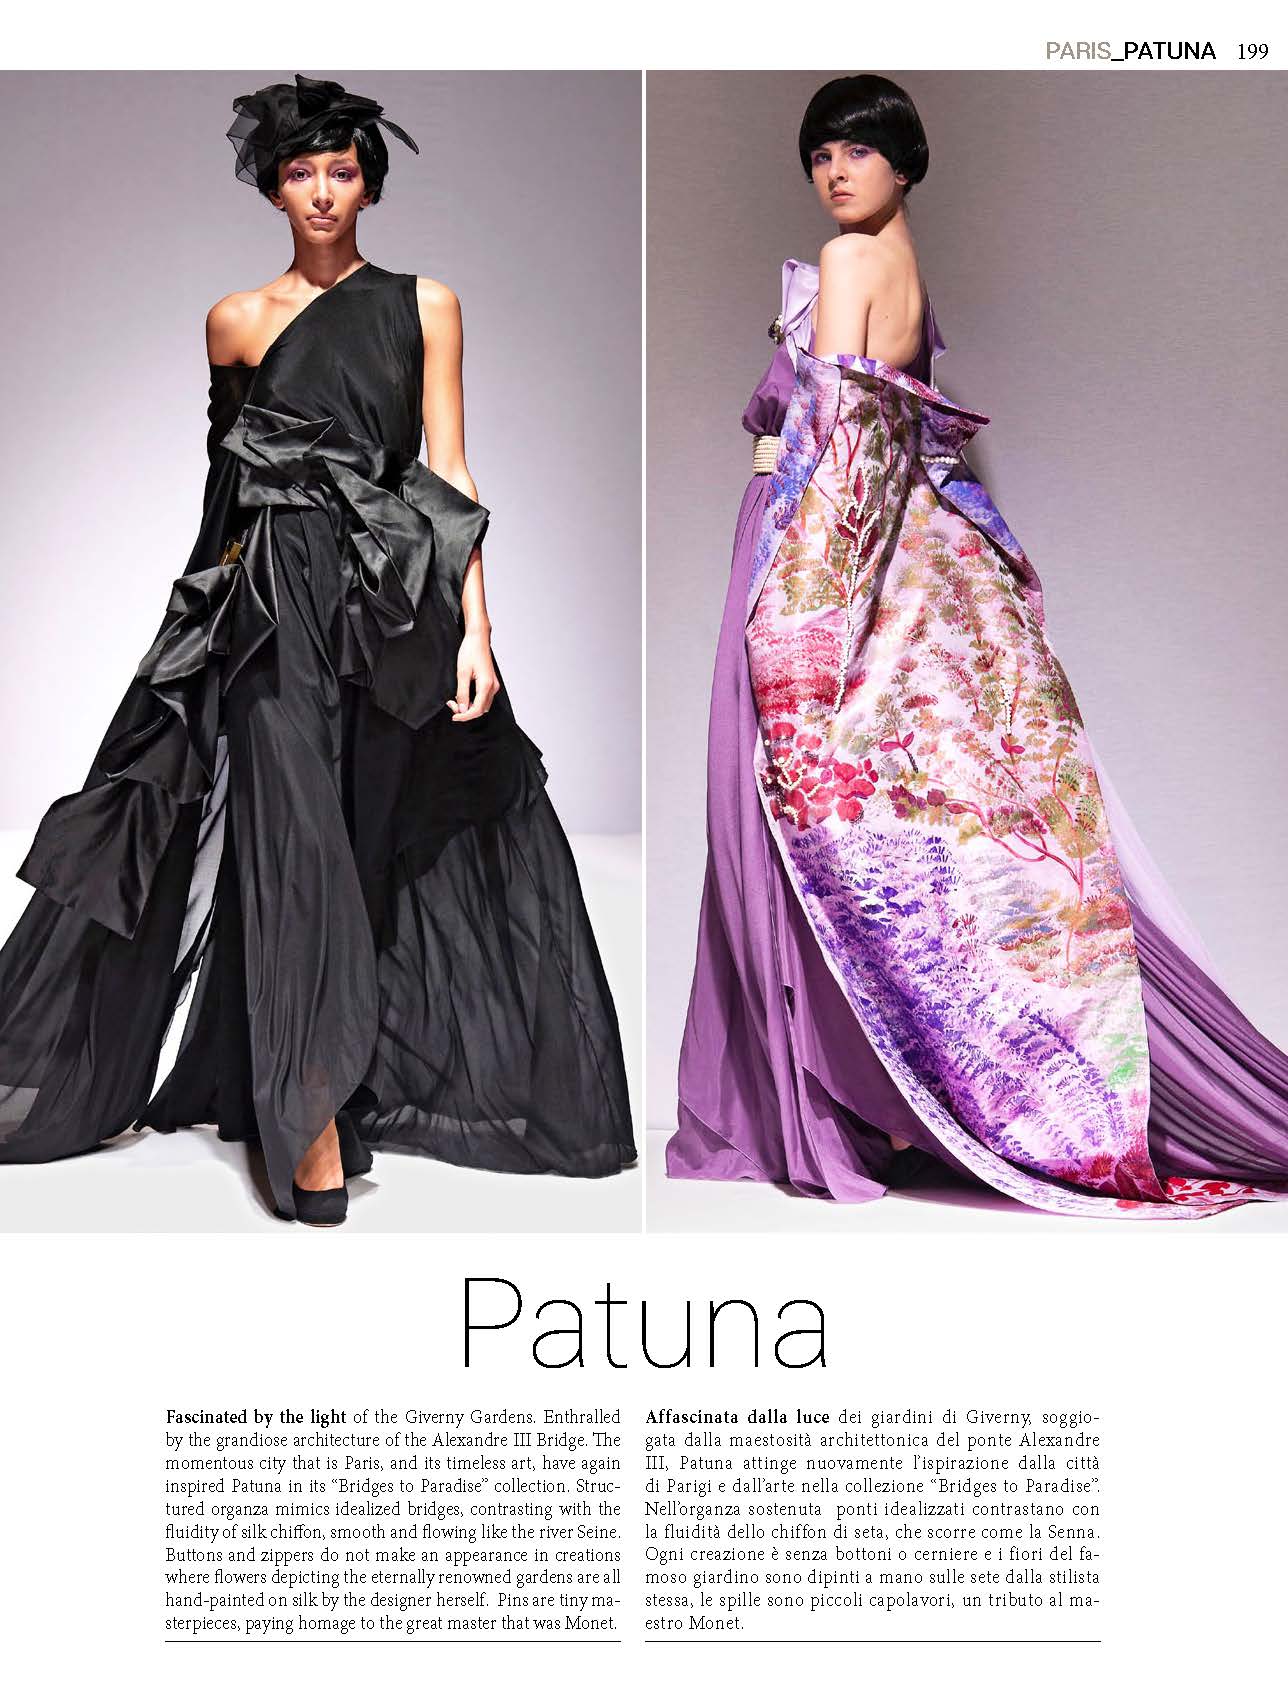 Collezioni_Haute Couture 163 WEB - Copy_Page_201